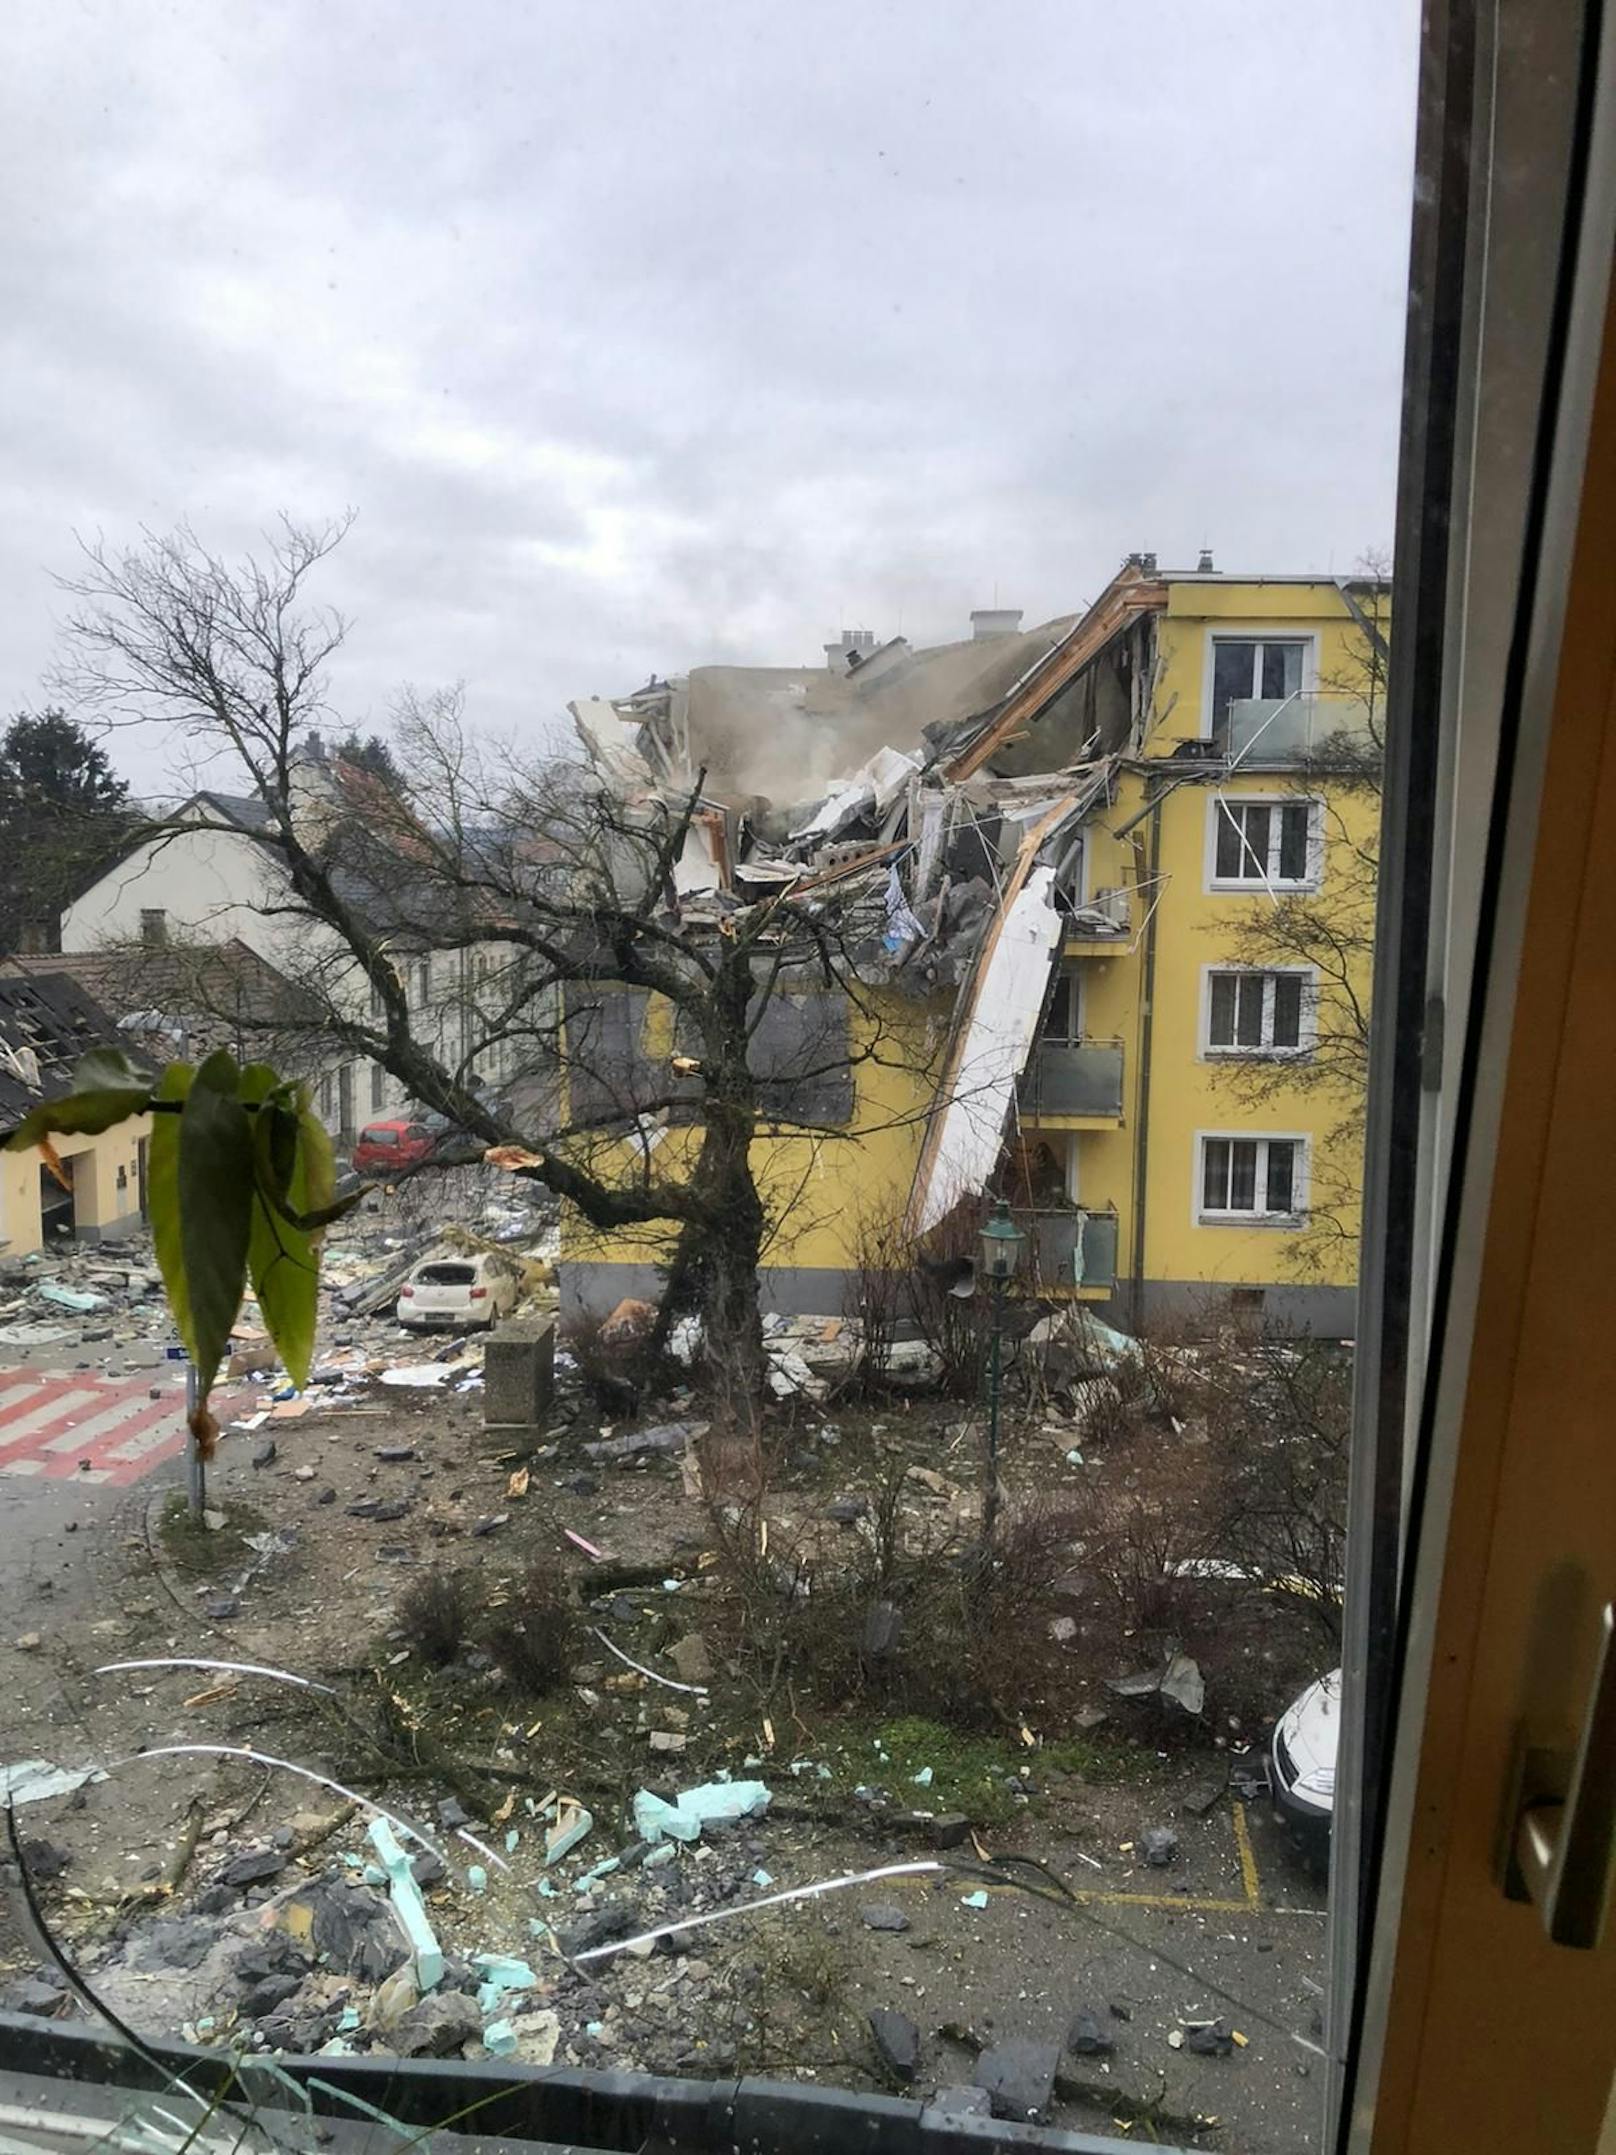 Bild der Zerstörung in Langenzersdorf